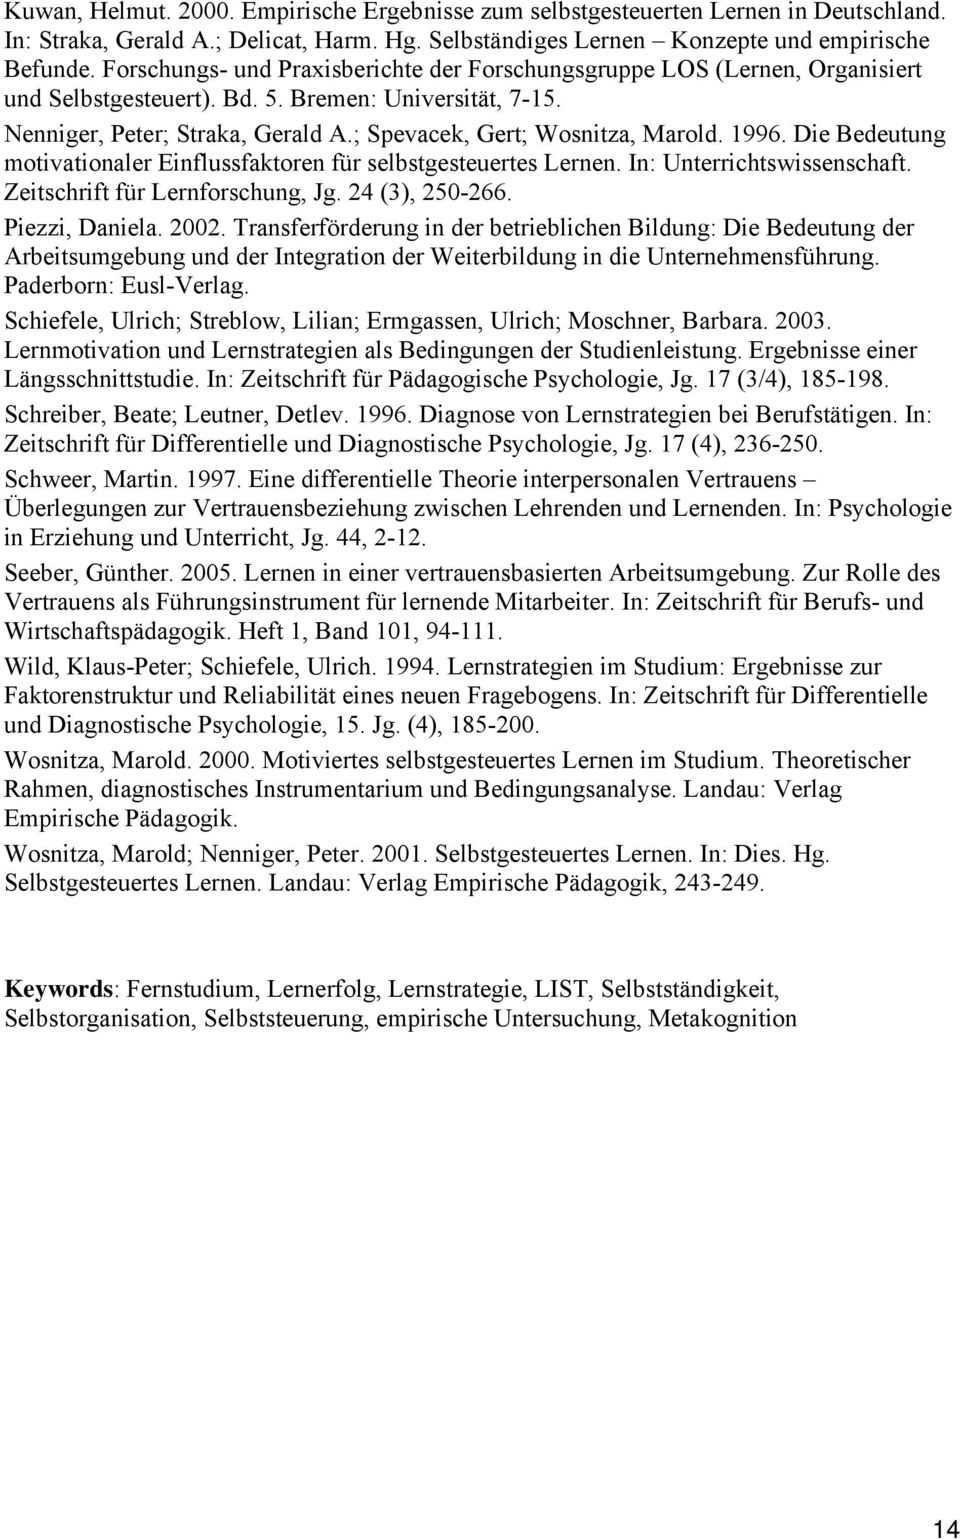 ; Spevacek, Gert; Wosnitza, Marold. 1996. Die Bedeutung motivationaler Einflussfaktoren für selbstgesteuertes Lernen. In: Unterrichtswissenschaft. Zeitschrift für Lernforschung, Jg. 24 (3), 250-266.